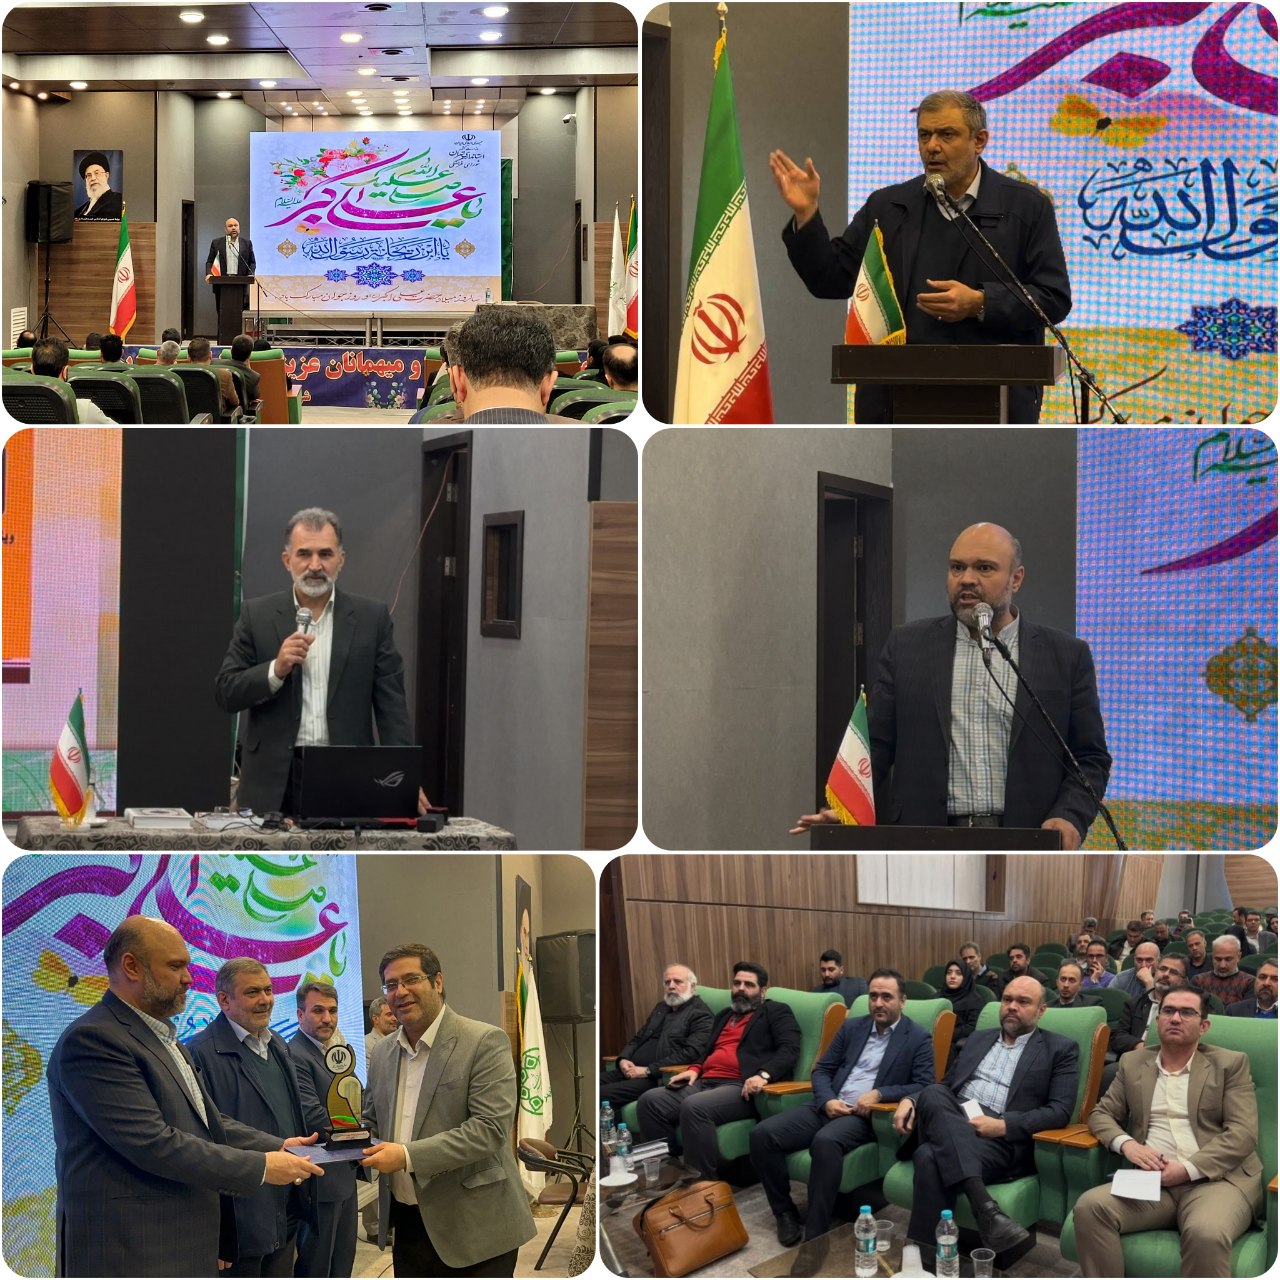 "روابط عمومی شهرداری پرند" در جمع برترین های استان تهران